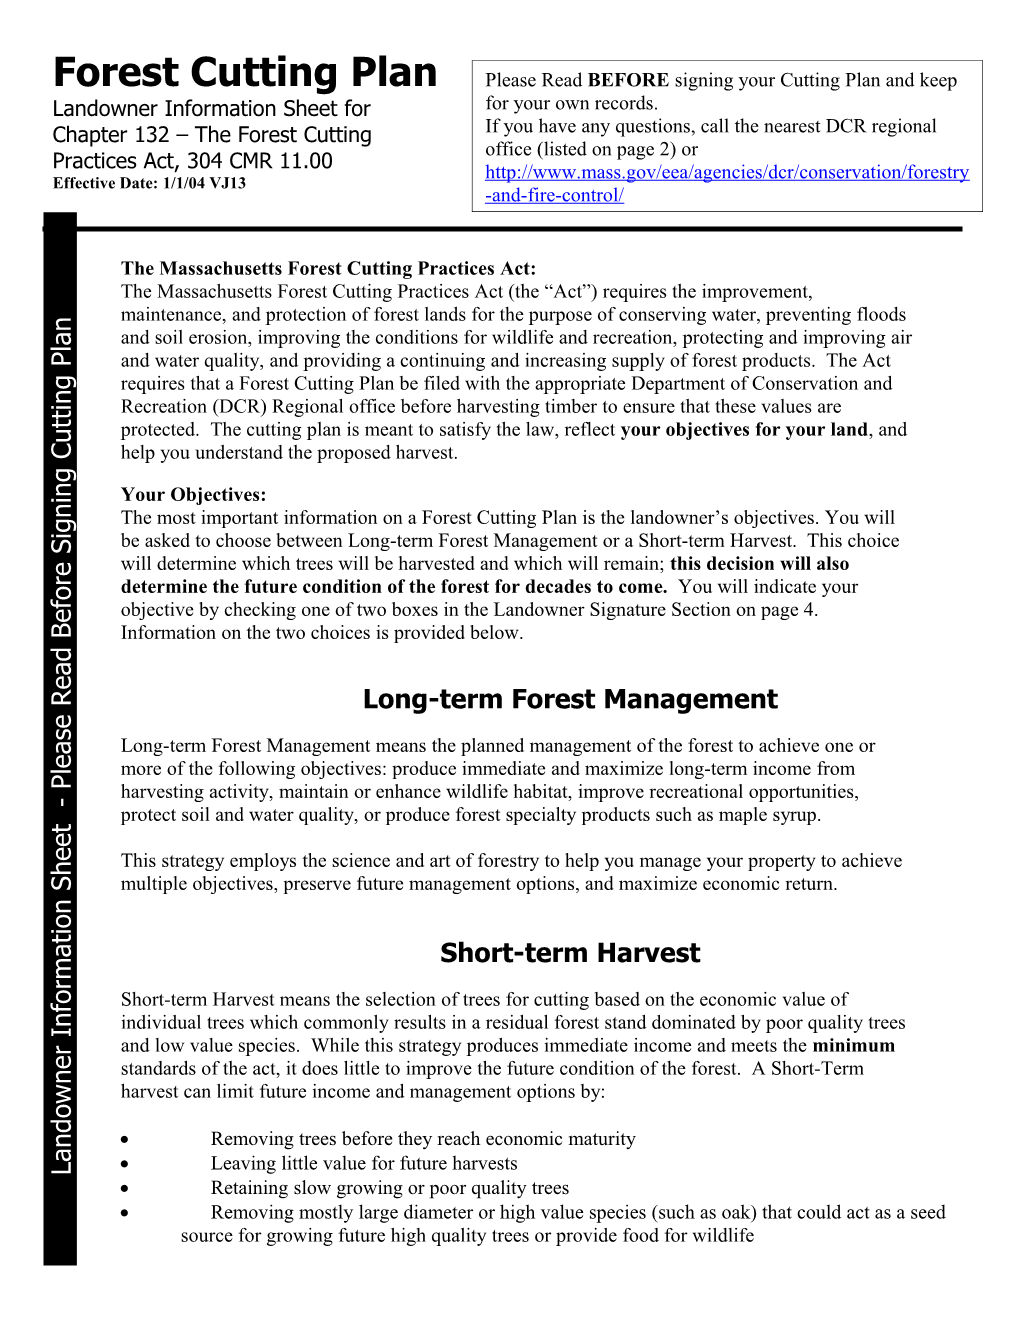 Long-Term Forest Management